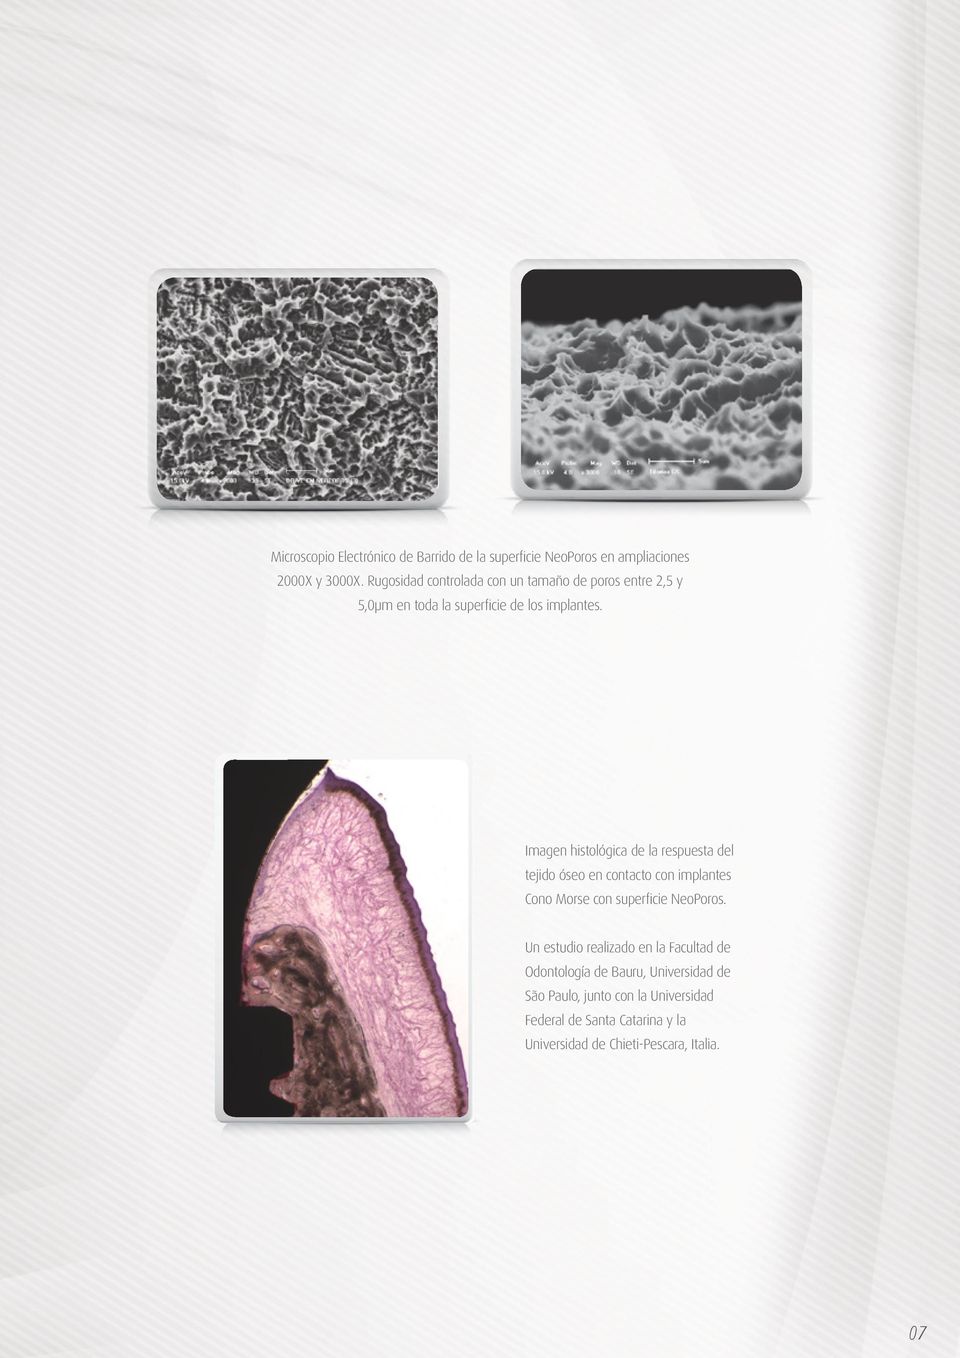 Imagen histológica de la respuesta del tejido óseo en contacto con implantes Cono Morse con superficie NeoPoros.